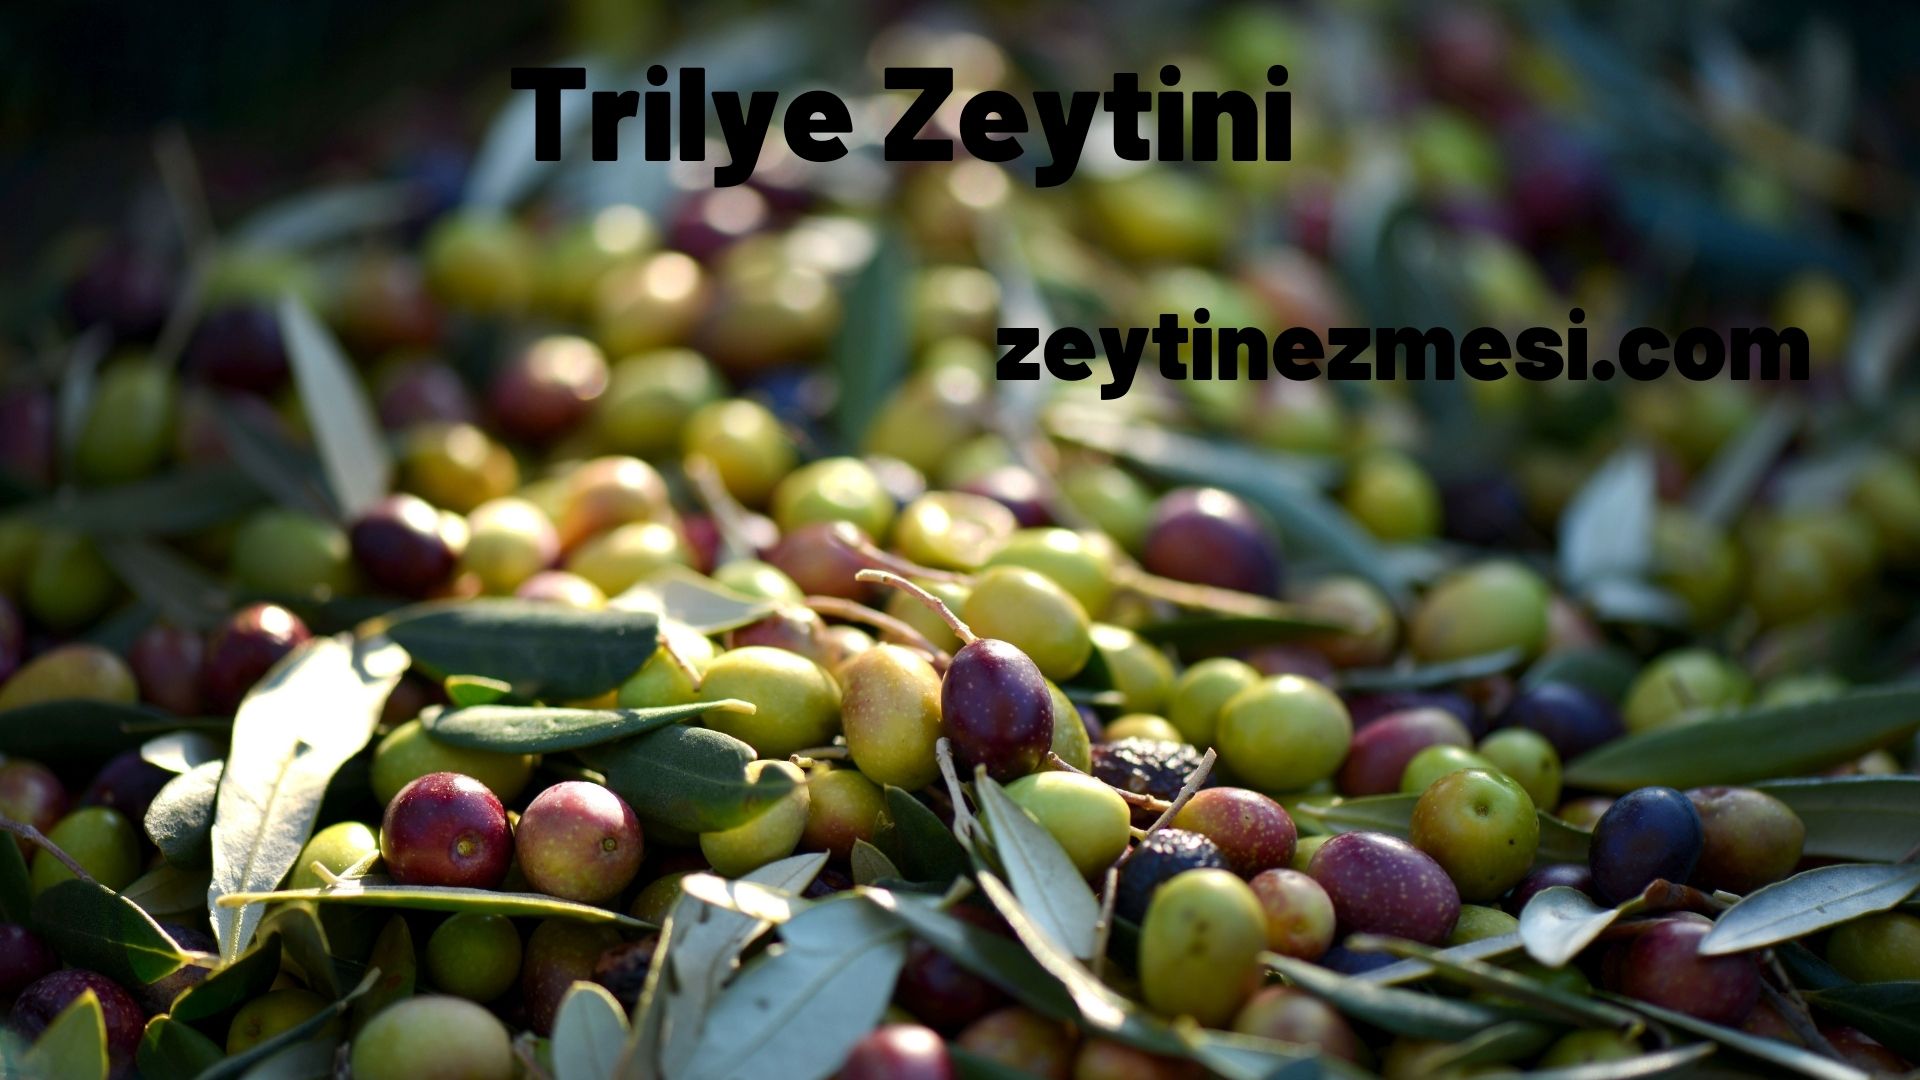 Trilye Zeytini